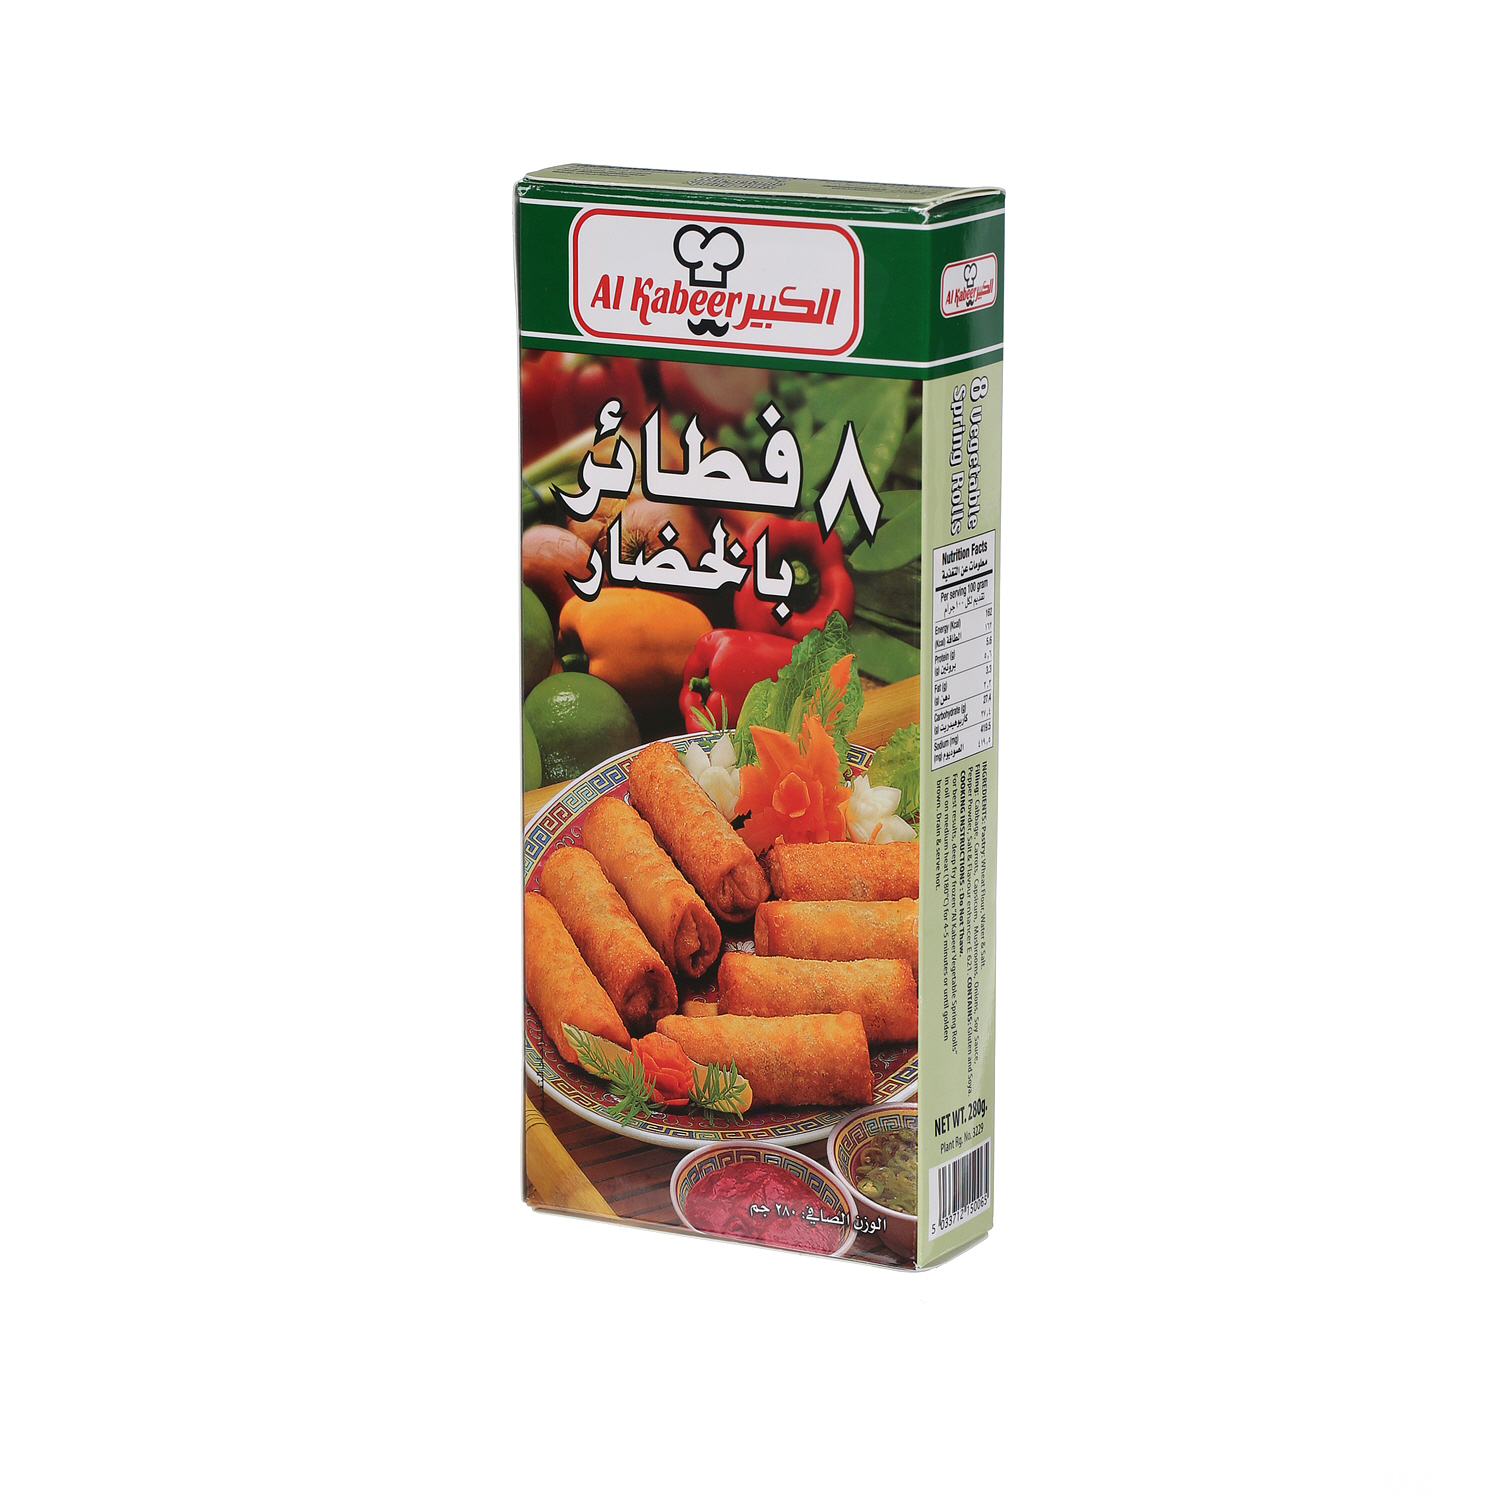 Al Kabeer Vegetable Spring Roll 240gm